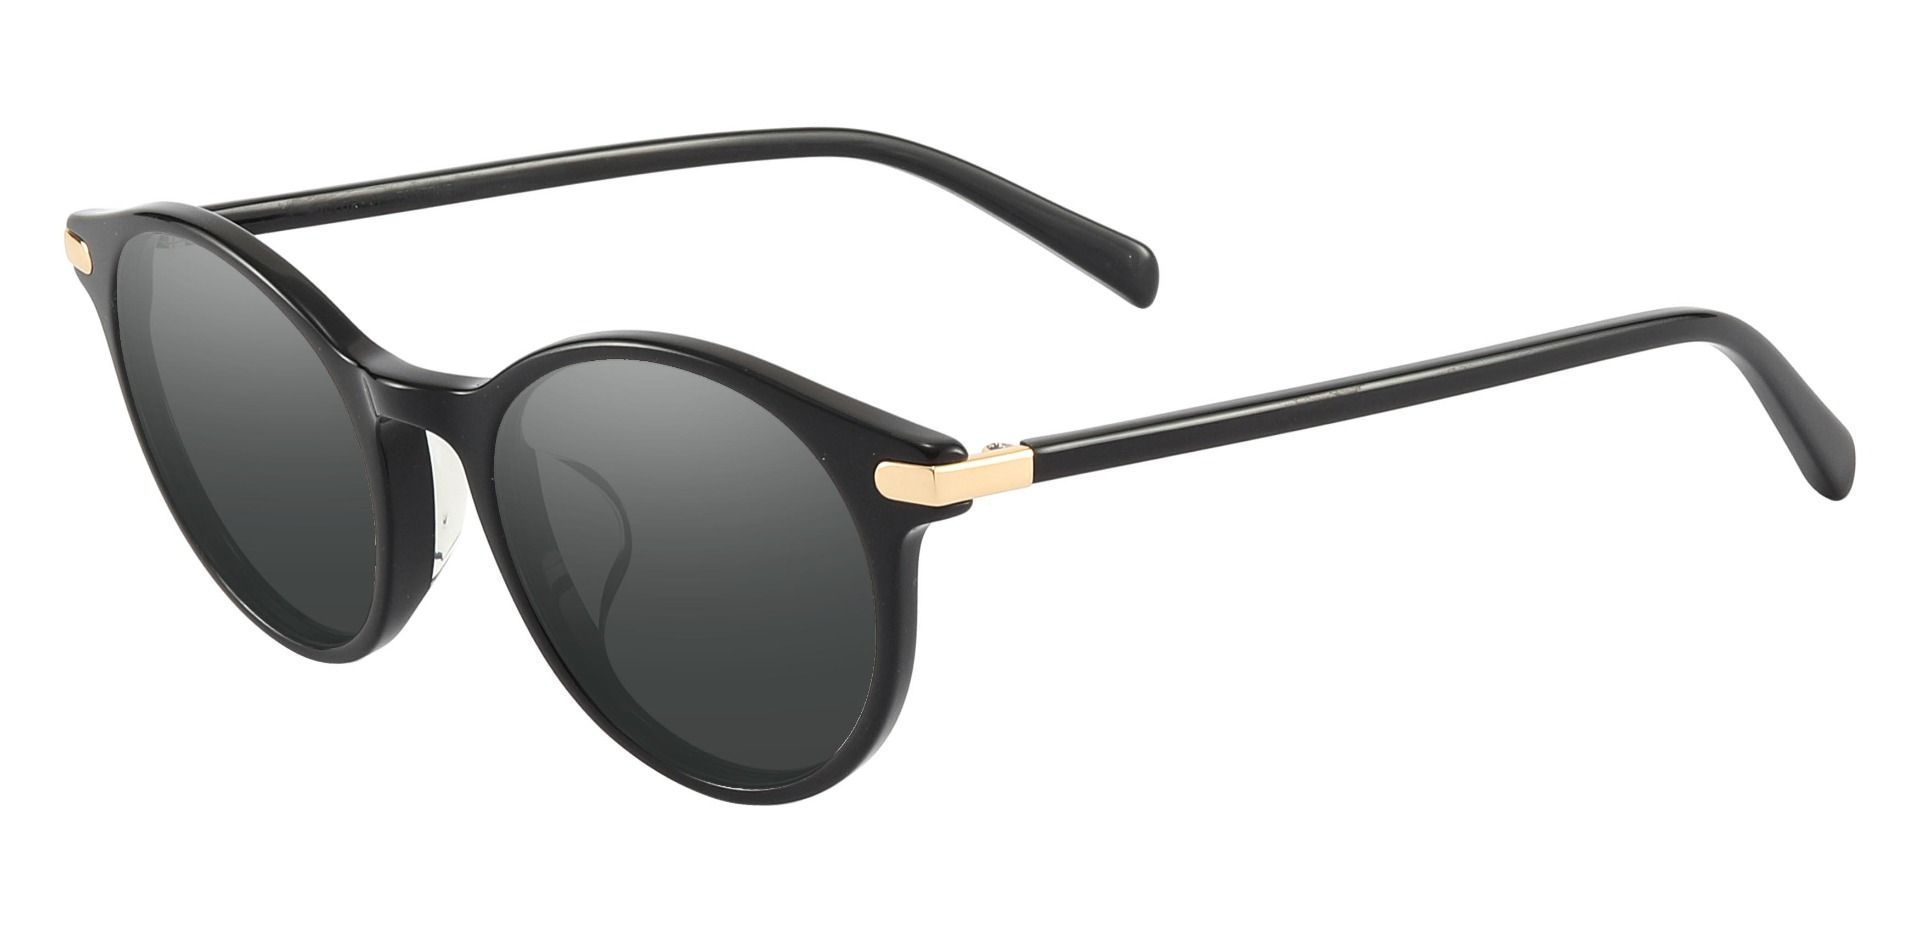 Barker Round Reading Sunglasses - Black Frame With Gray Lenses